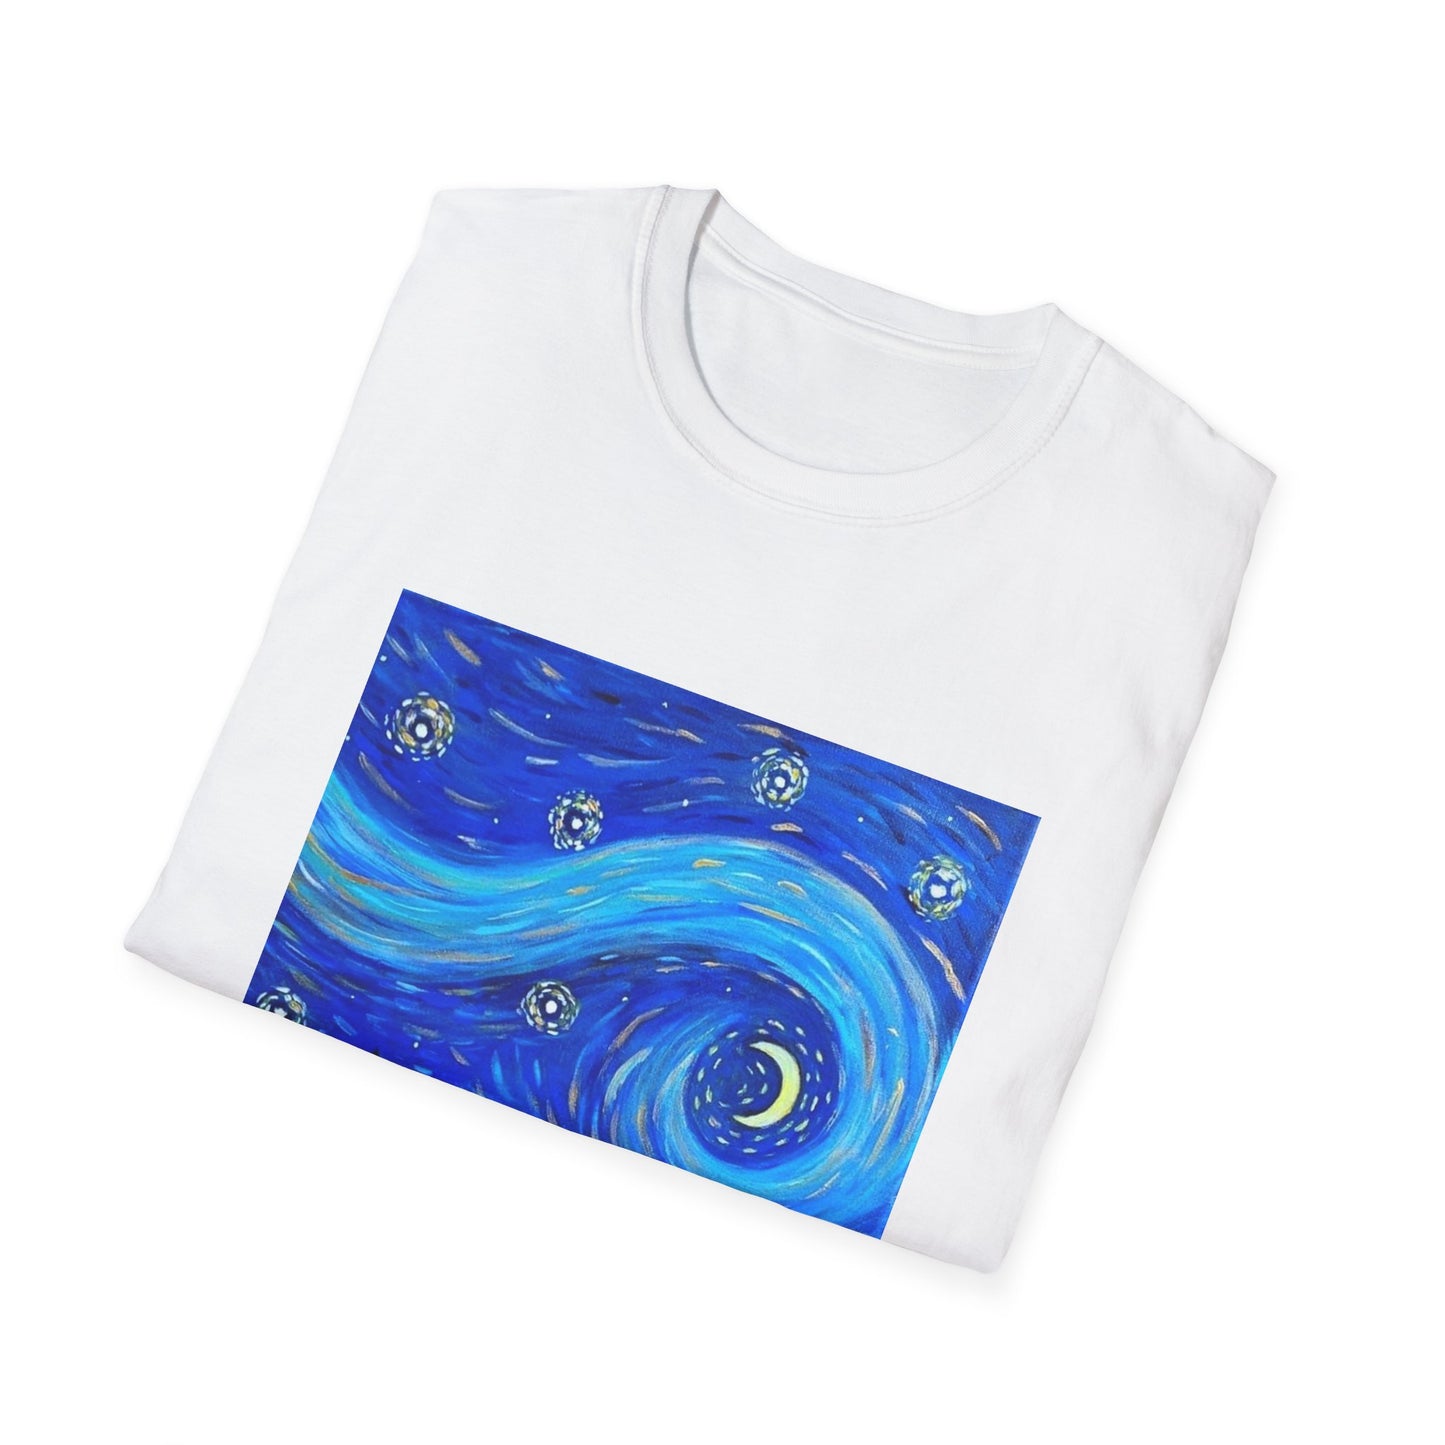 Starry, Starry Cat | T-Shirt